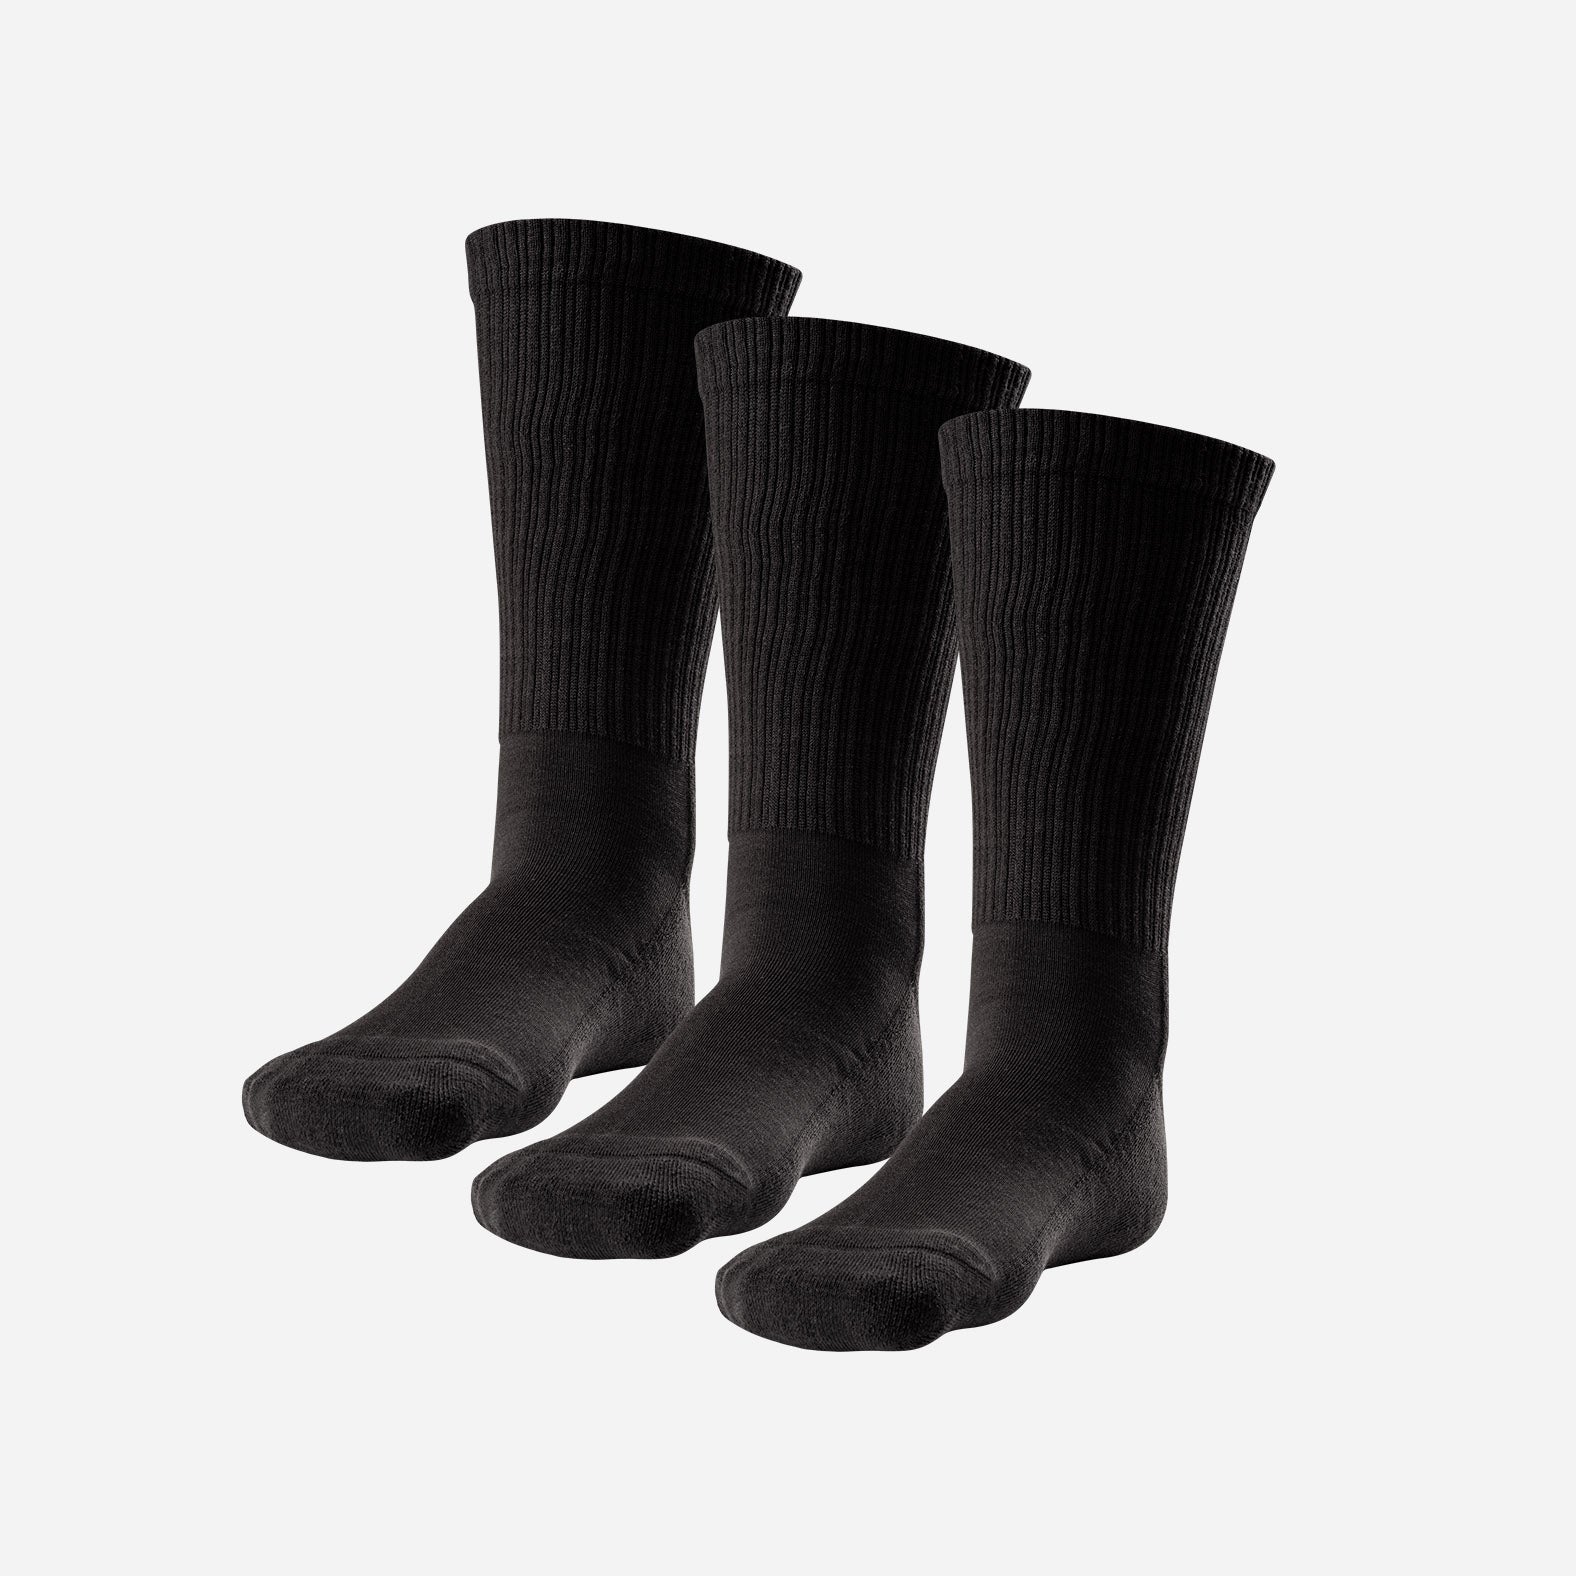 Crew Socks for Men – The Sock Factory